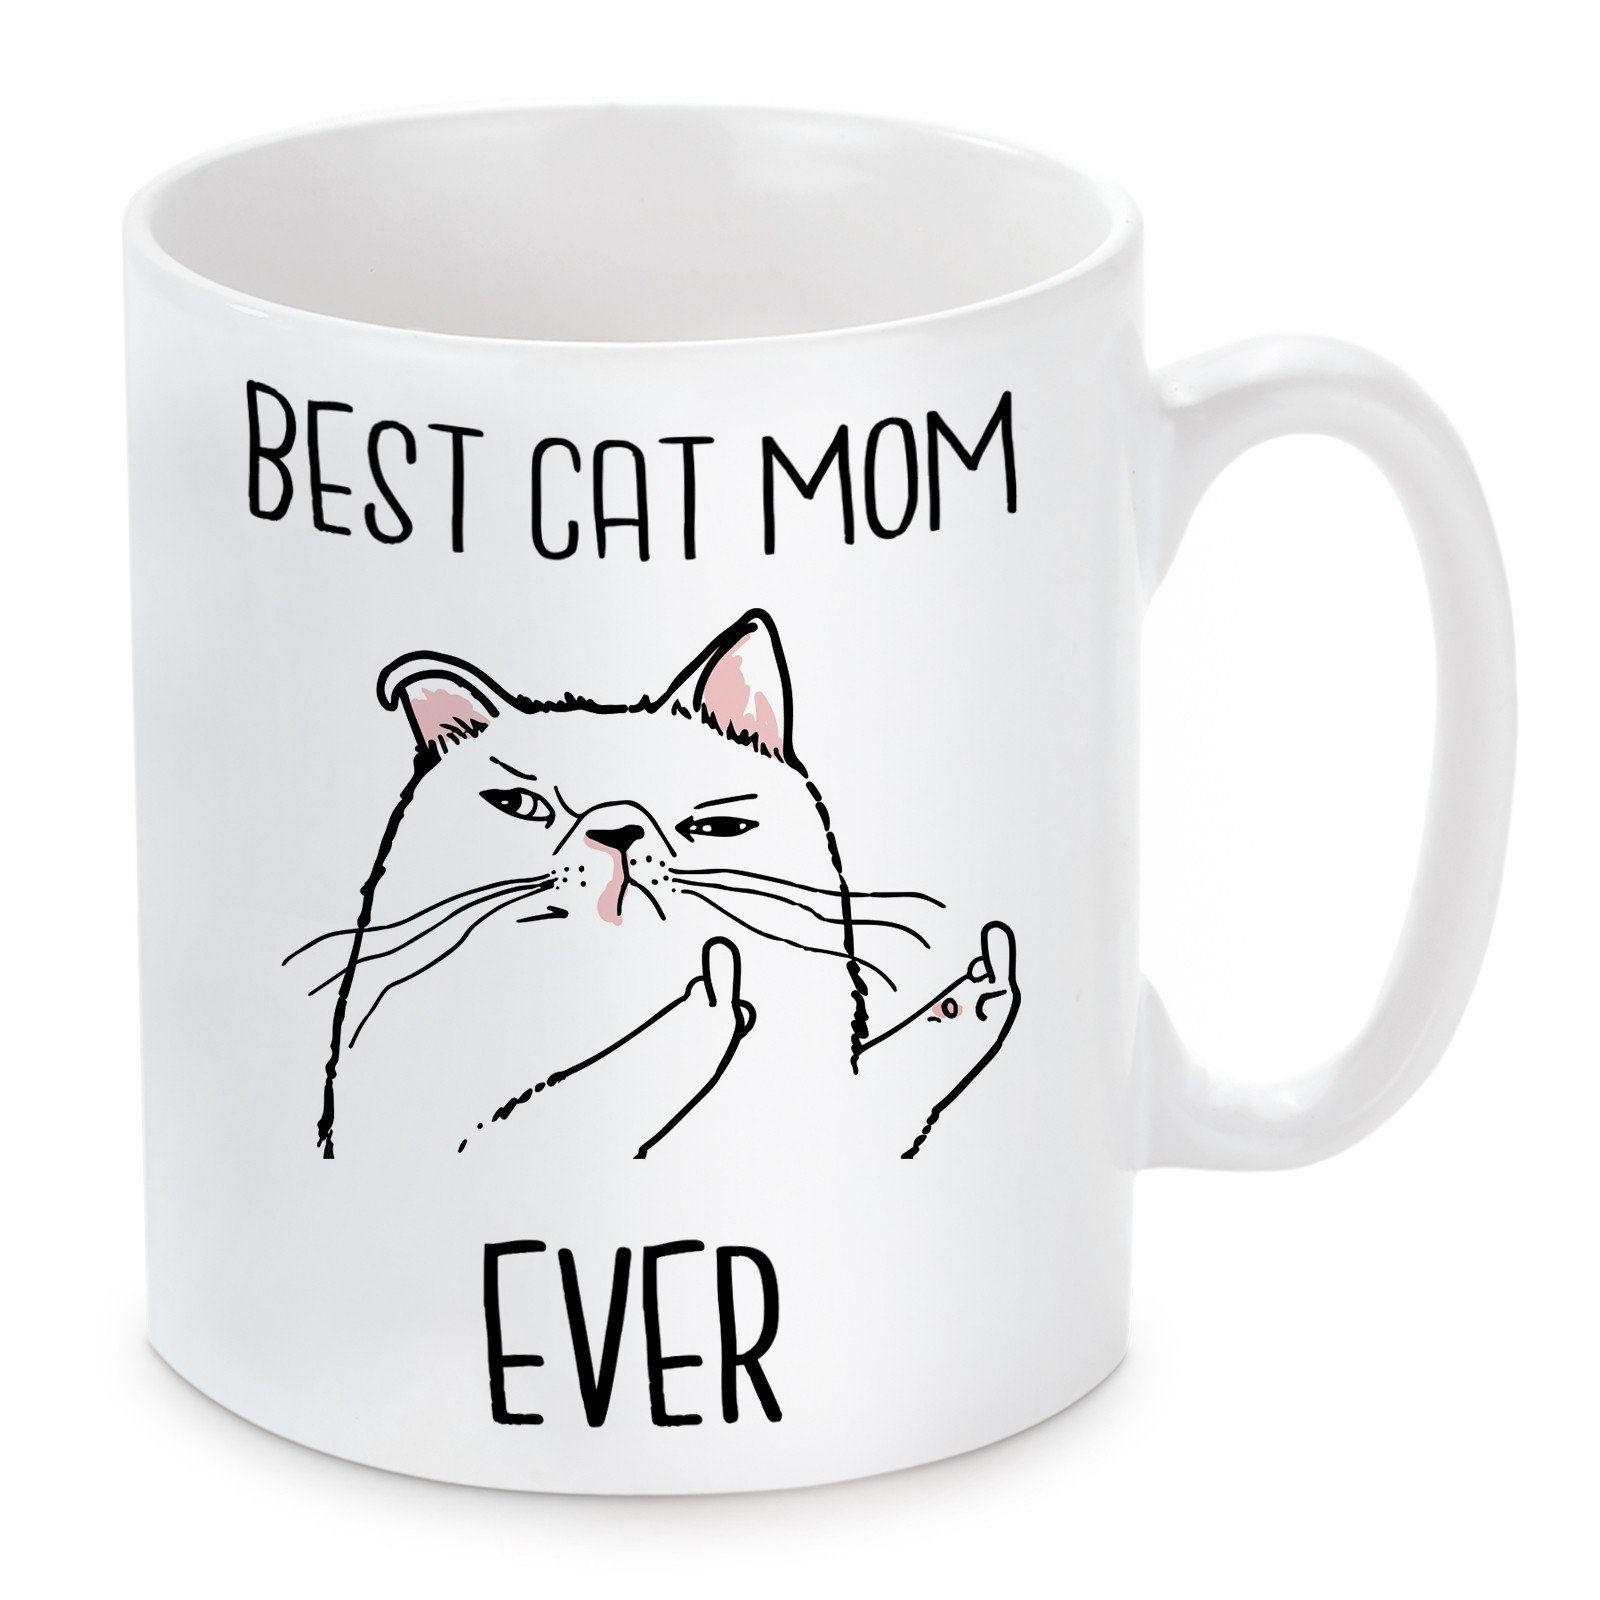 Tasse Herzbotschaft Ever, Motiv Kaffeebecher Mom Kaffeetasse mit und Cat Keramik, mikrowellengeeignet spülmaschinenfest Best